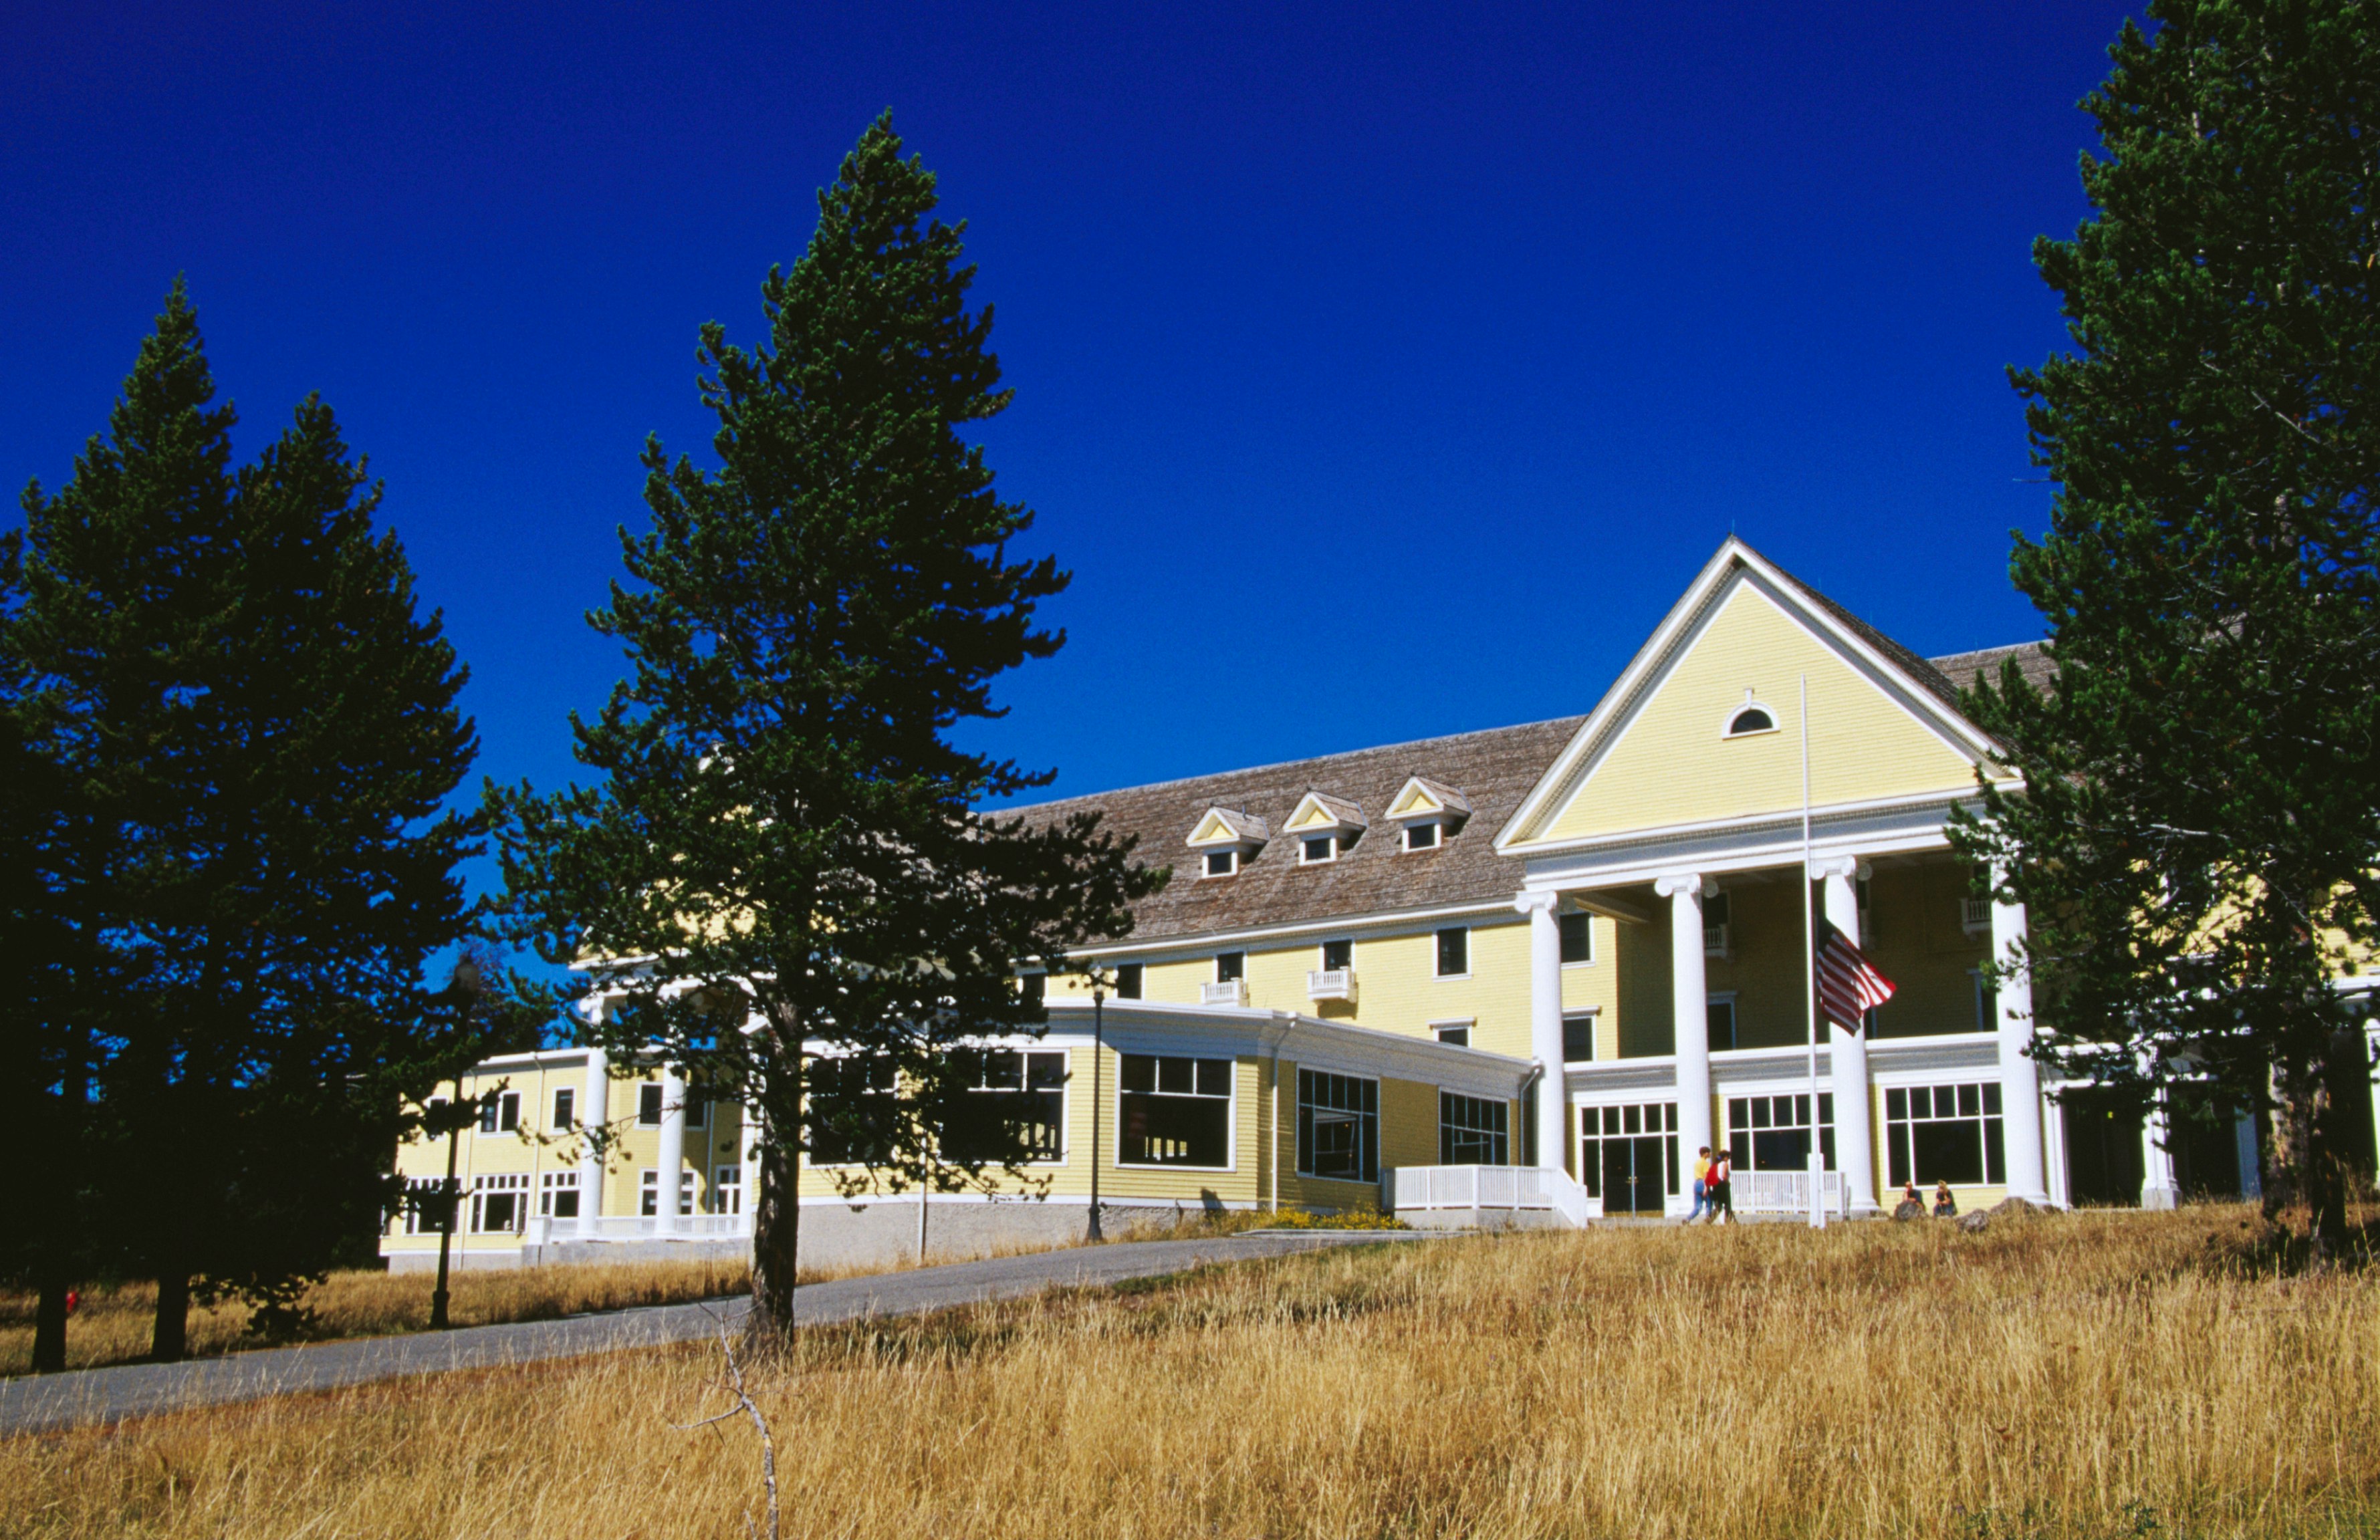 Lake Yellowstone Hotel.